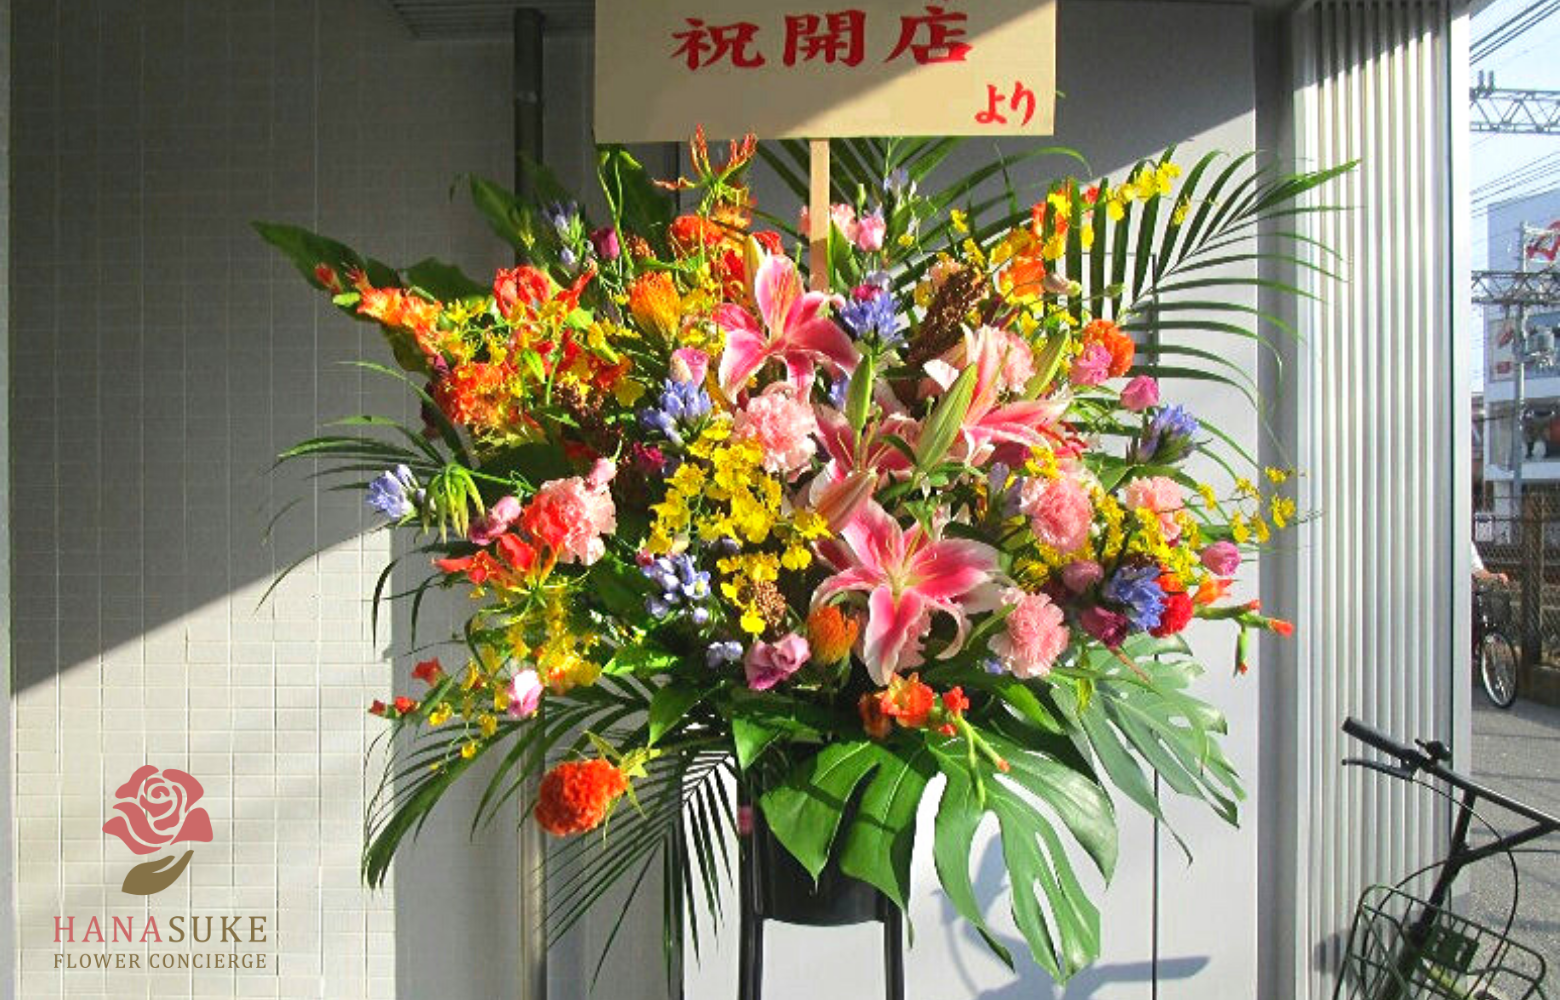 大阪へ贈るスタンド花 バルーンスタンド花 祝花 祝花の花助 贈答用の花の選び方やマナーをご紹介